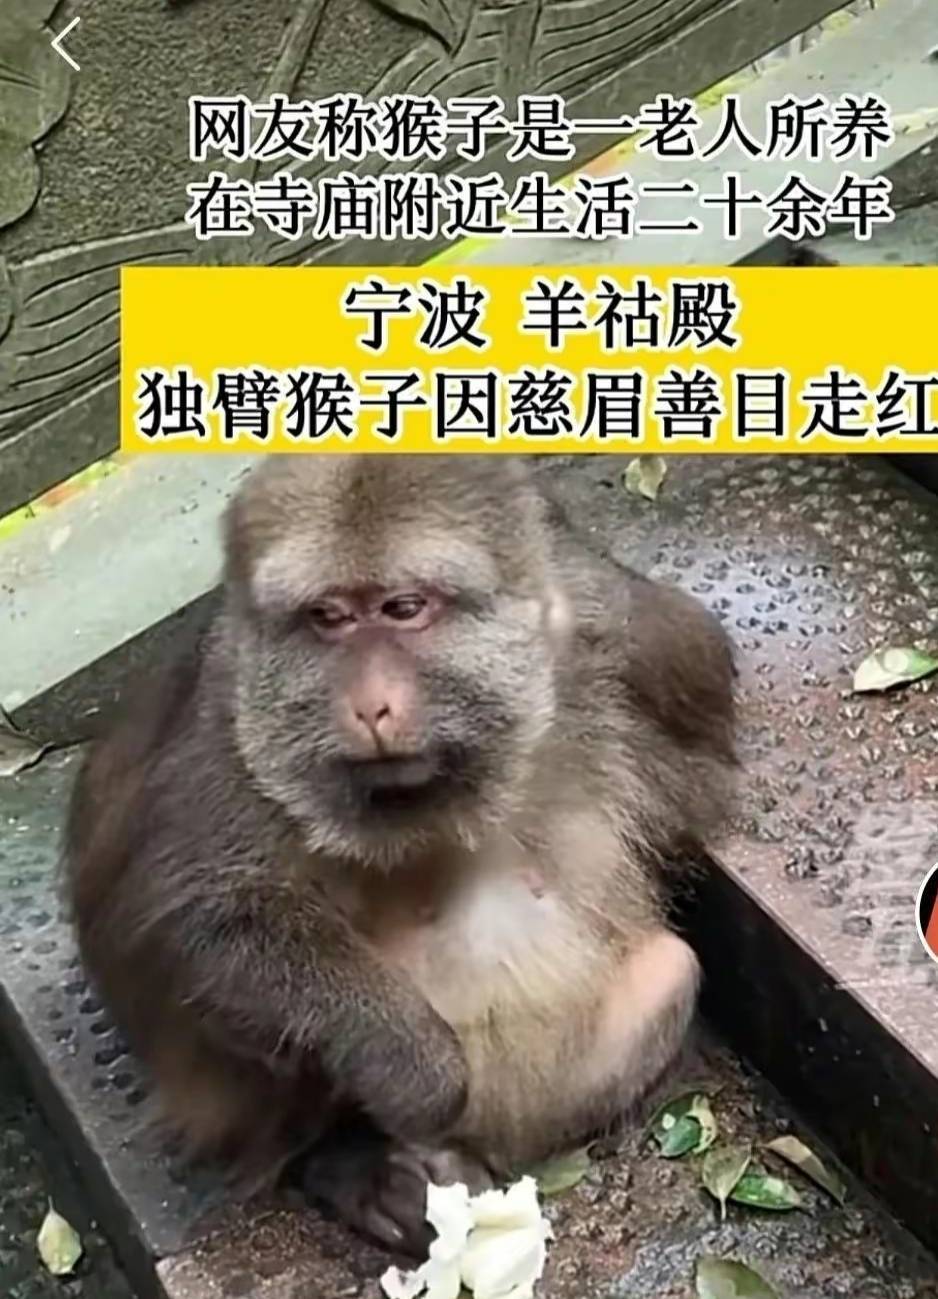 宁波有一只佛系的独臂猕猴